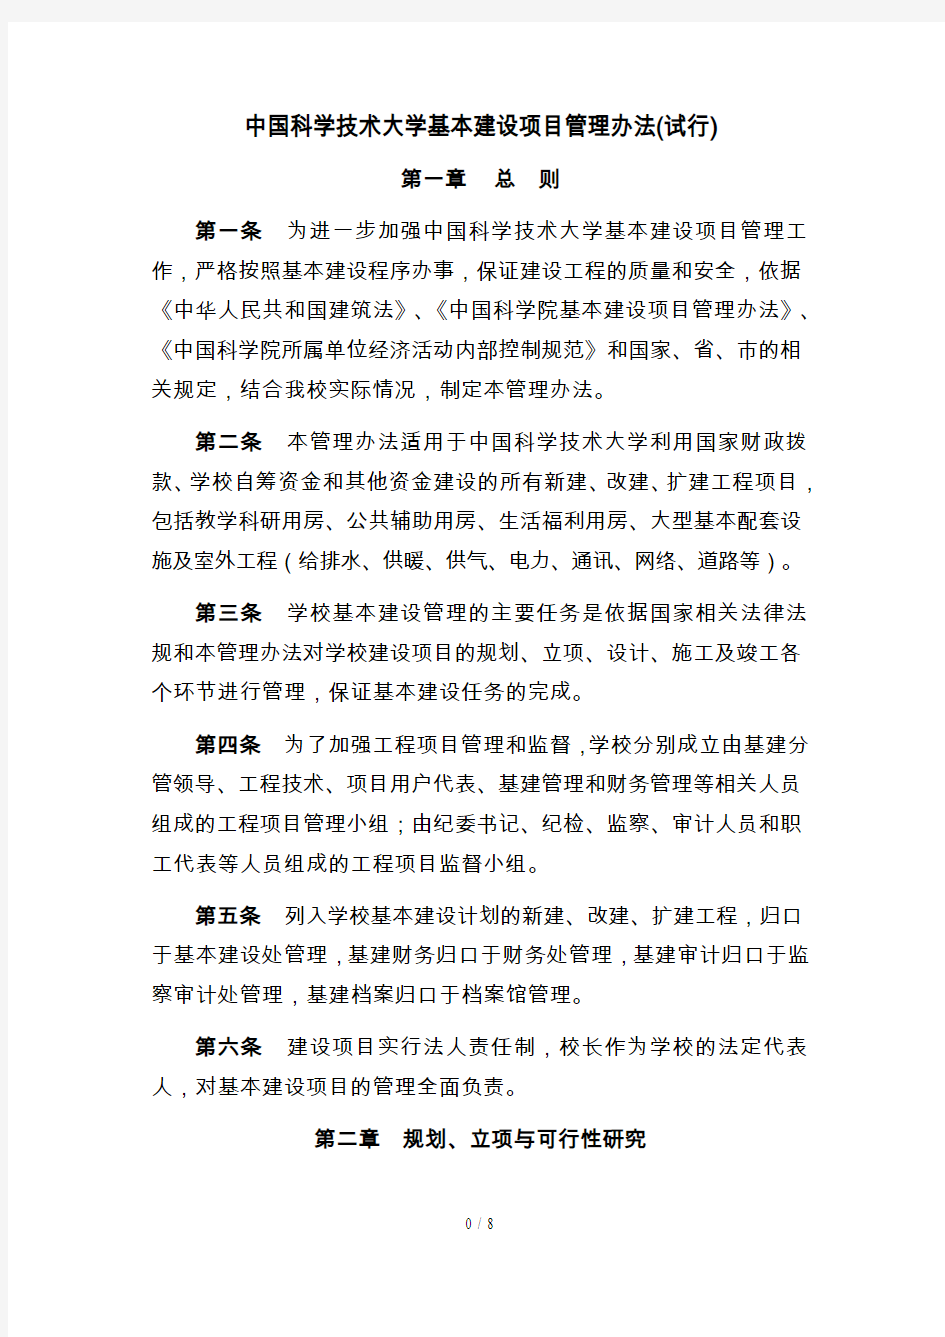 中国科学技术大学基本建设项目管理办法